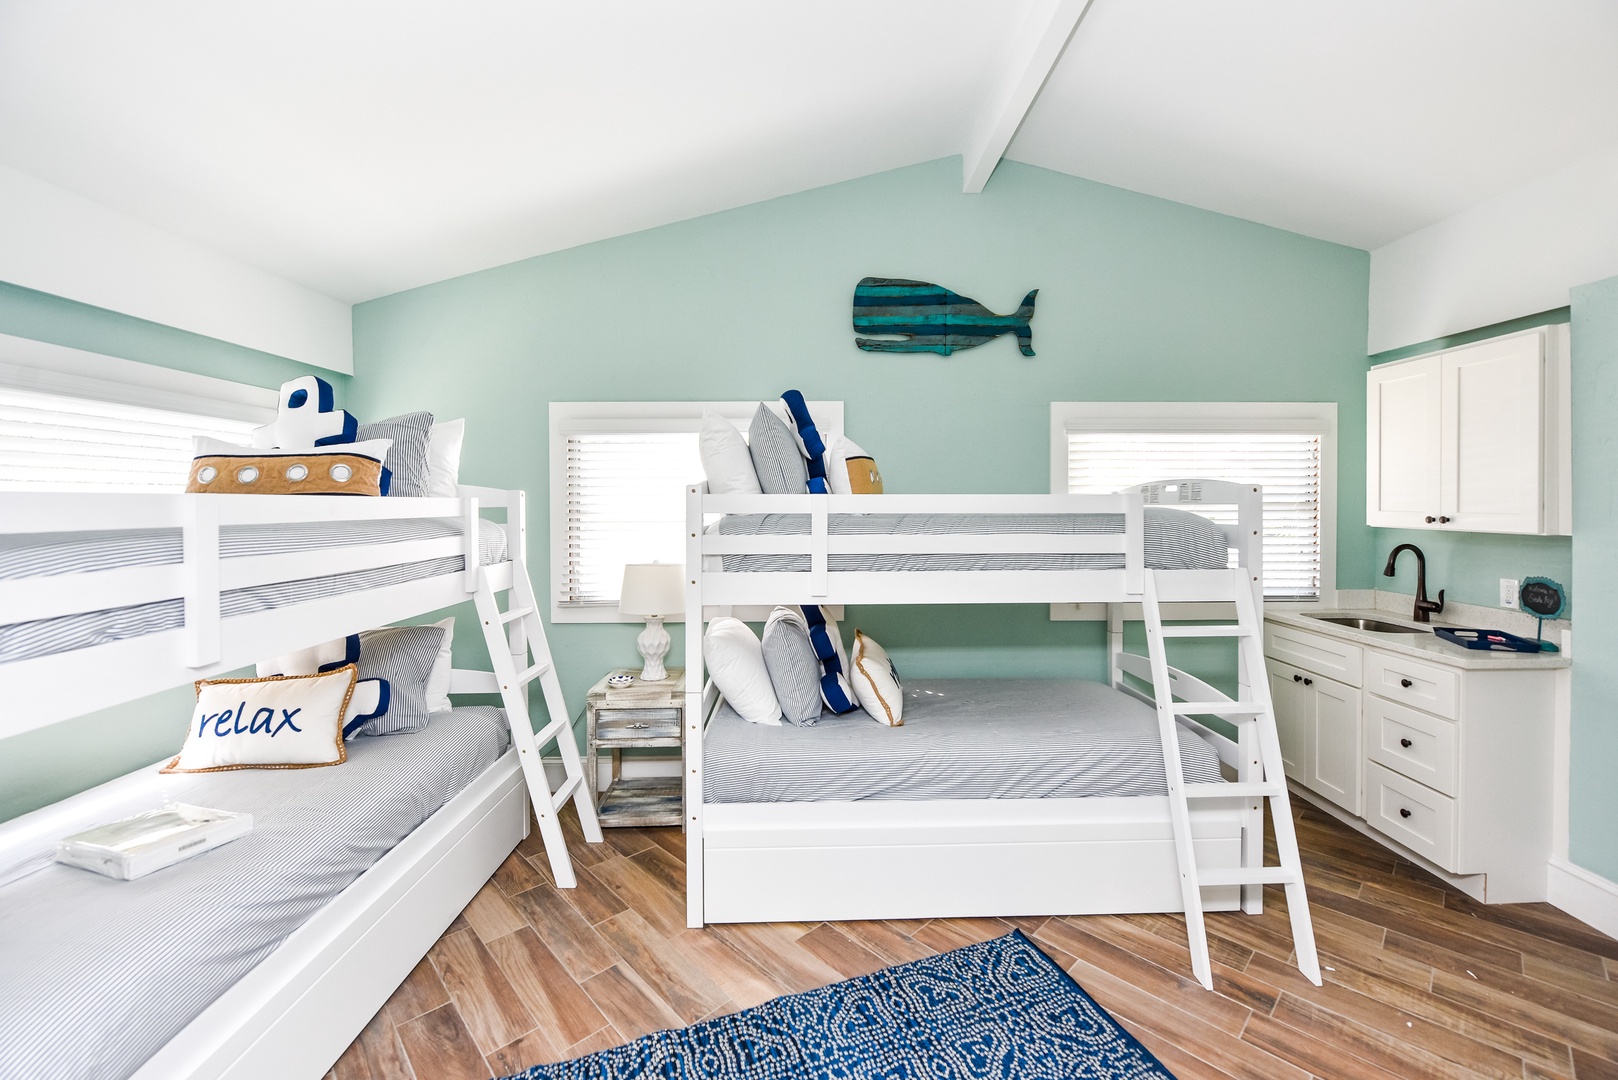 Third Bedroom- Two bunk beds